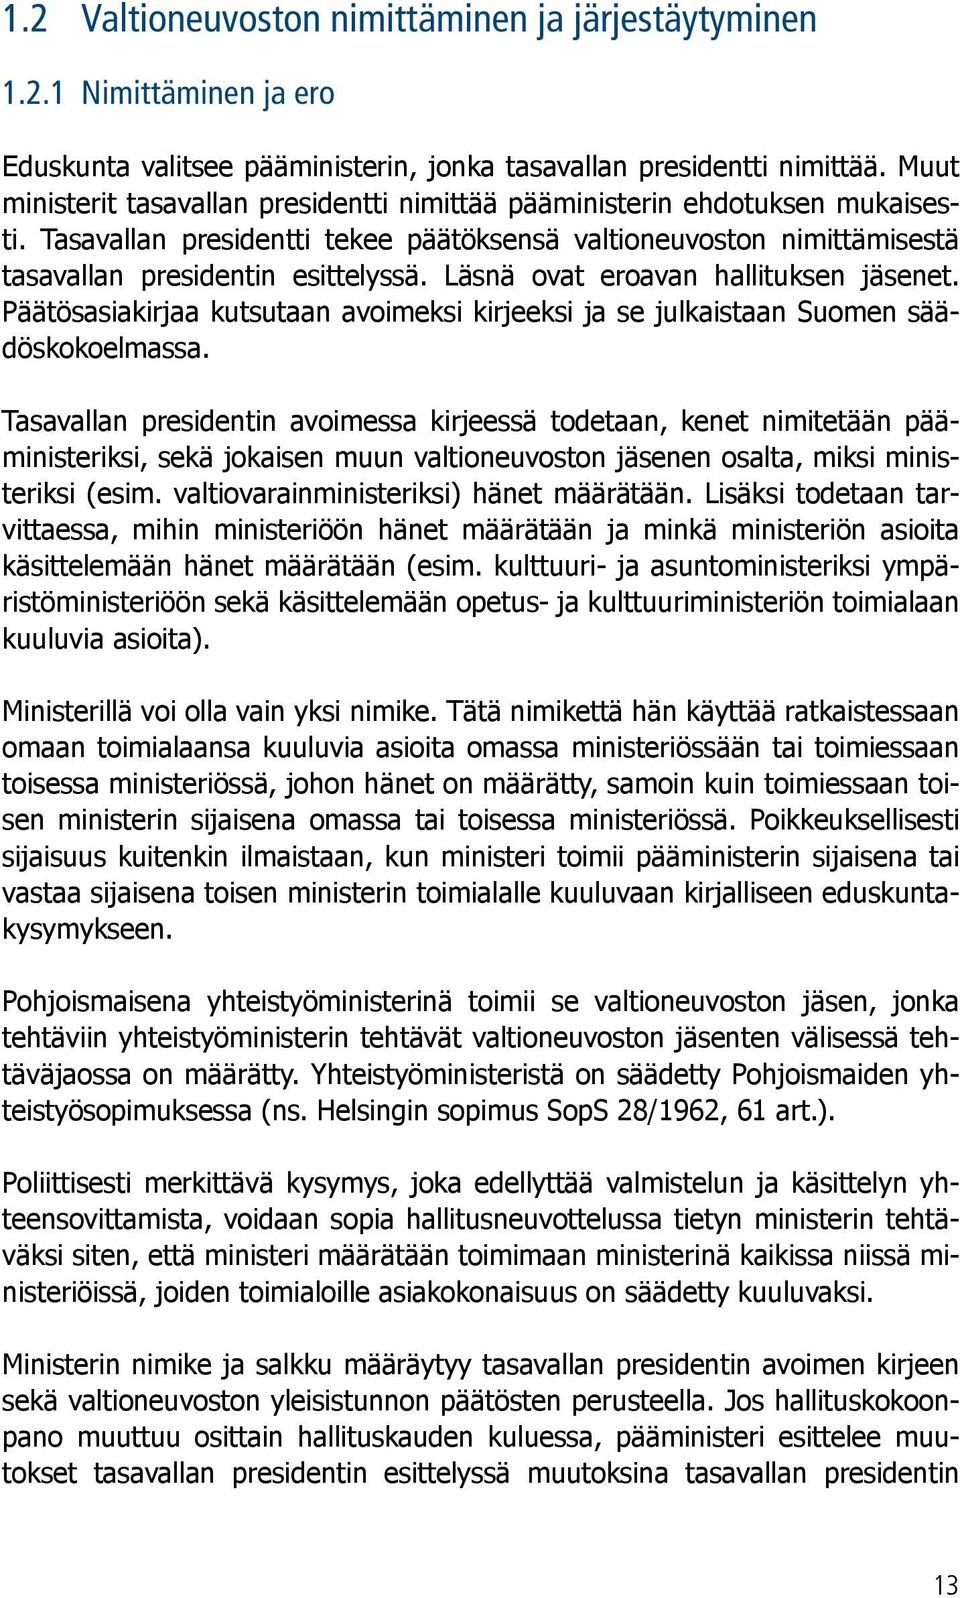 Läsnä ovat eroavan hallituksen jäsenet. Päätösasiakirjaa kutsutaan avoimeksi kirjeeksi ja se julkaistaan Suomen säädöskokoelmassa.